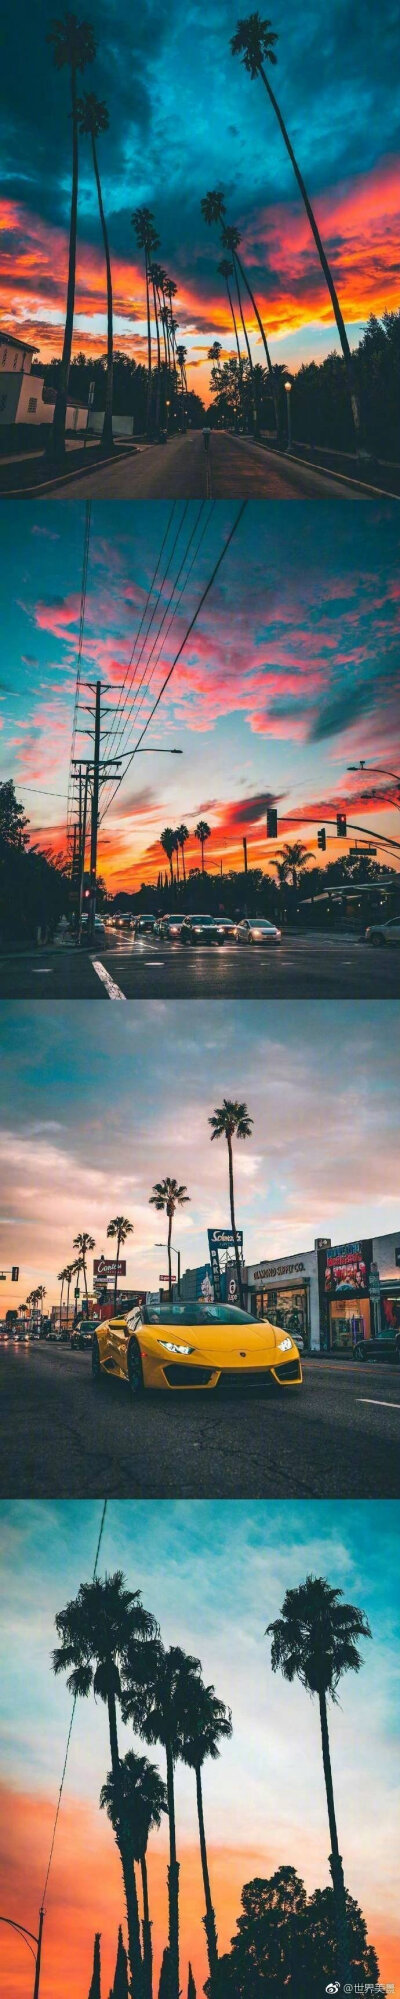 洛杉矶的椰树晚霞